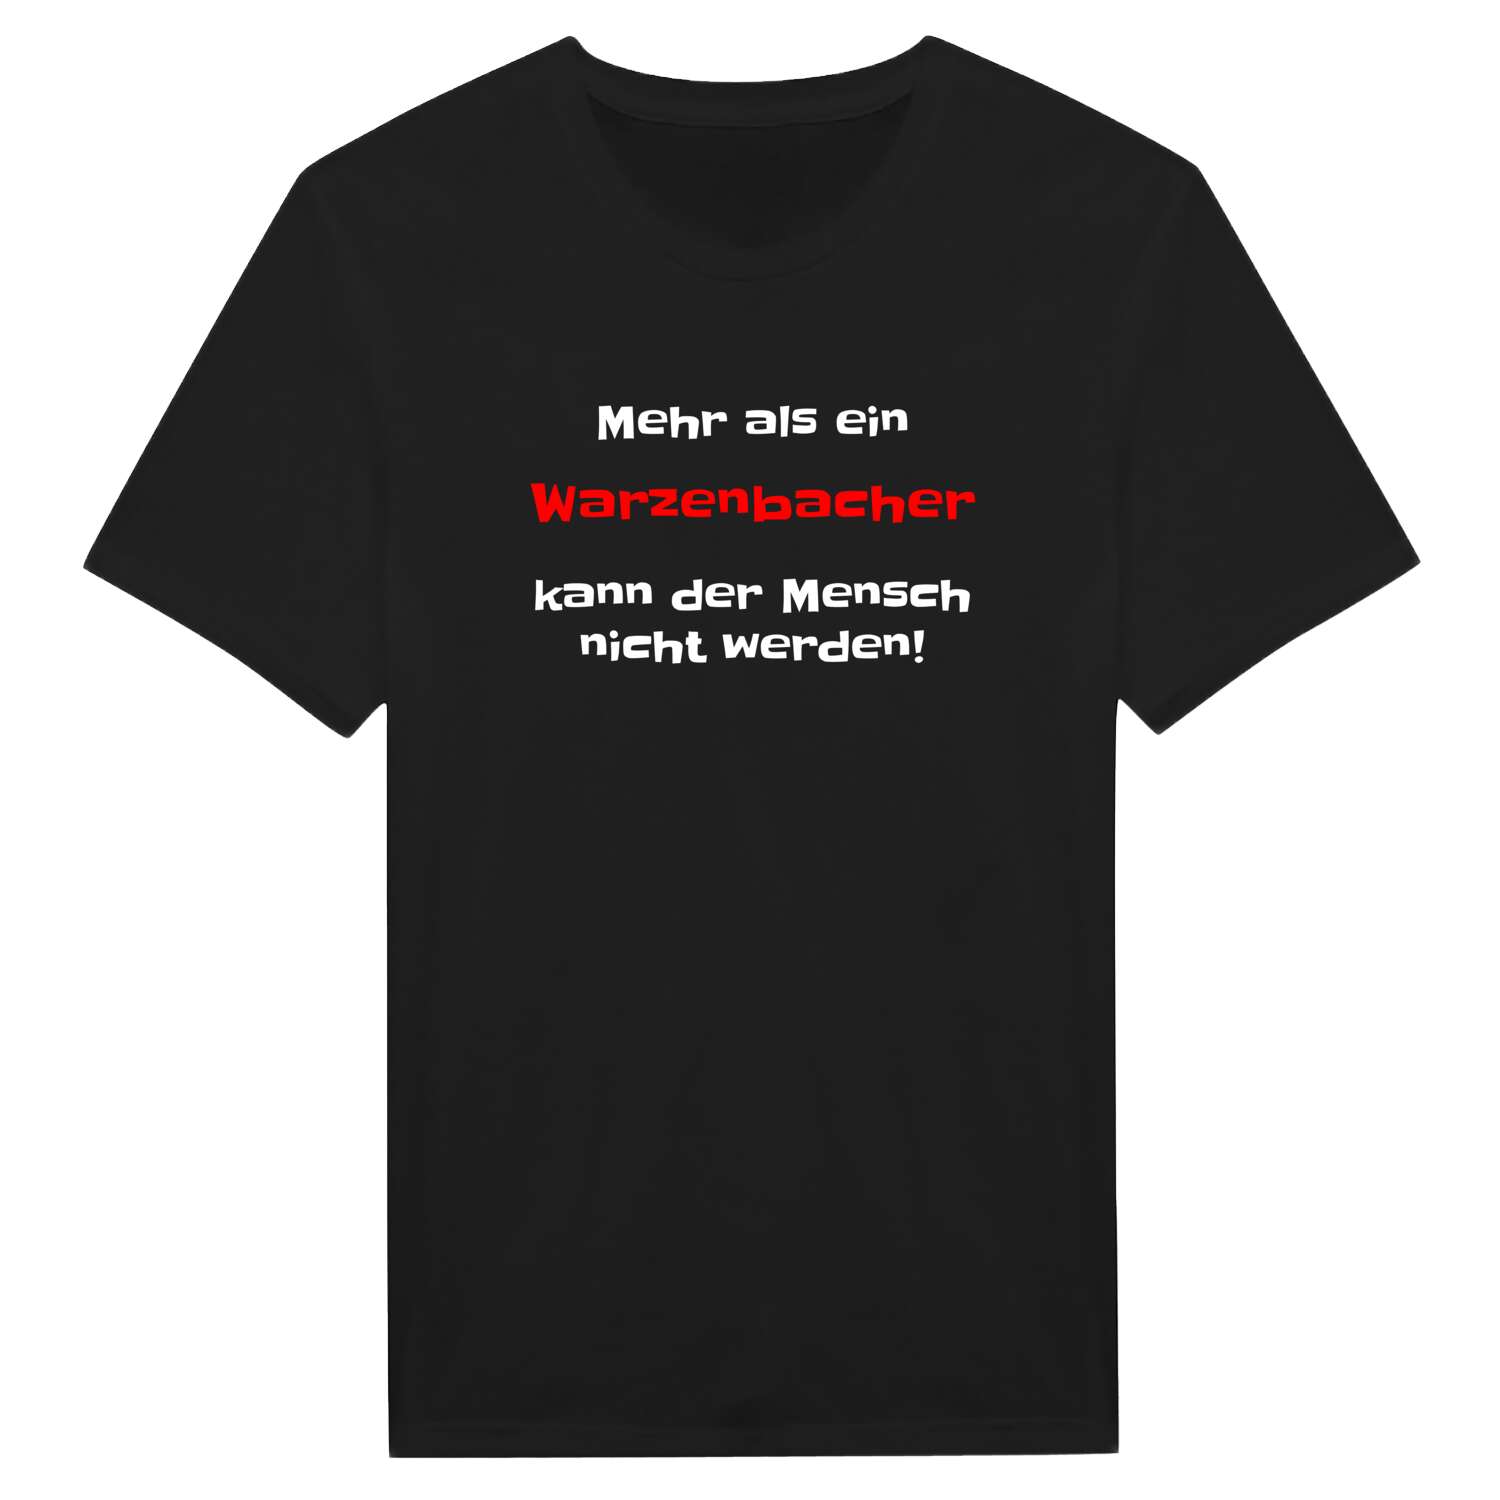 Warzenbach T-Shirt »Mehr als ein«